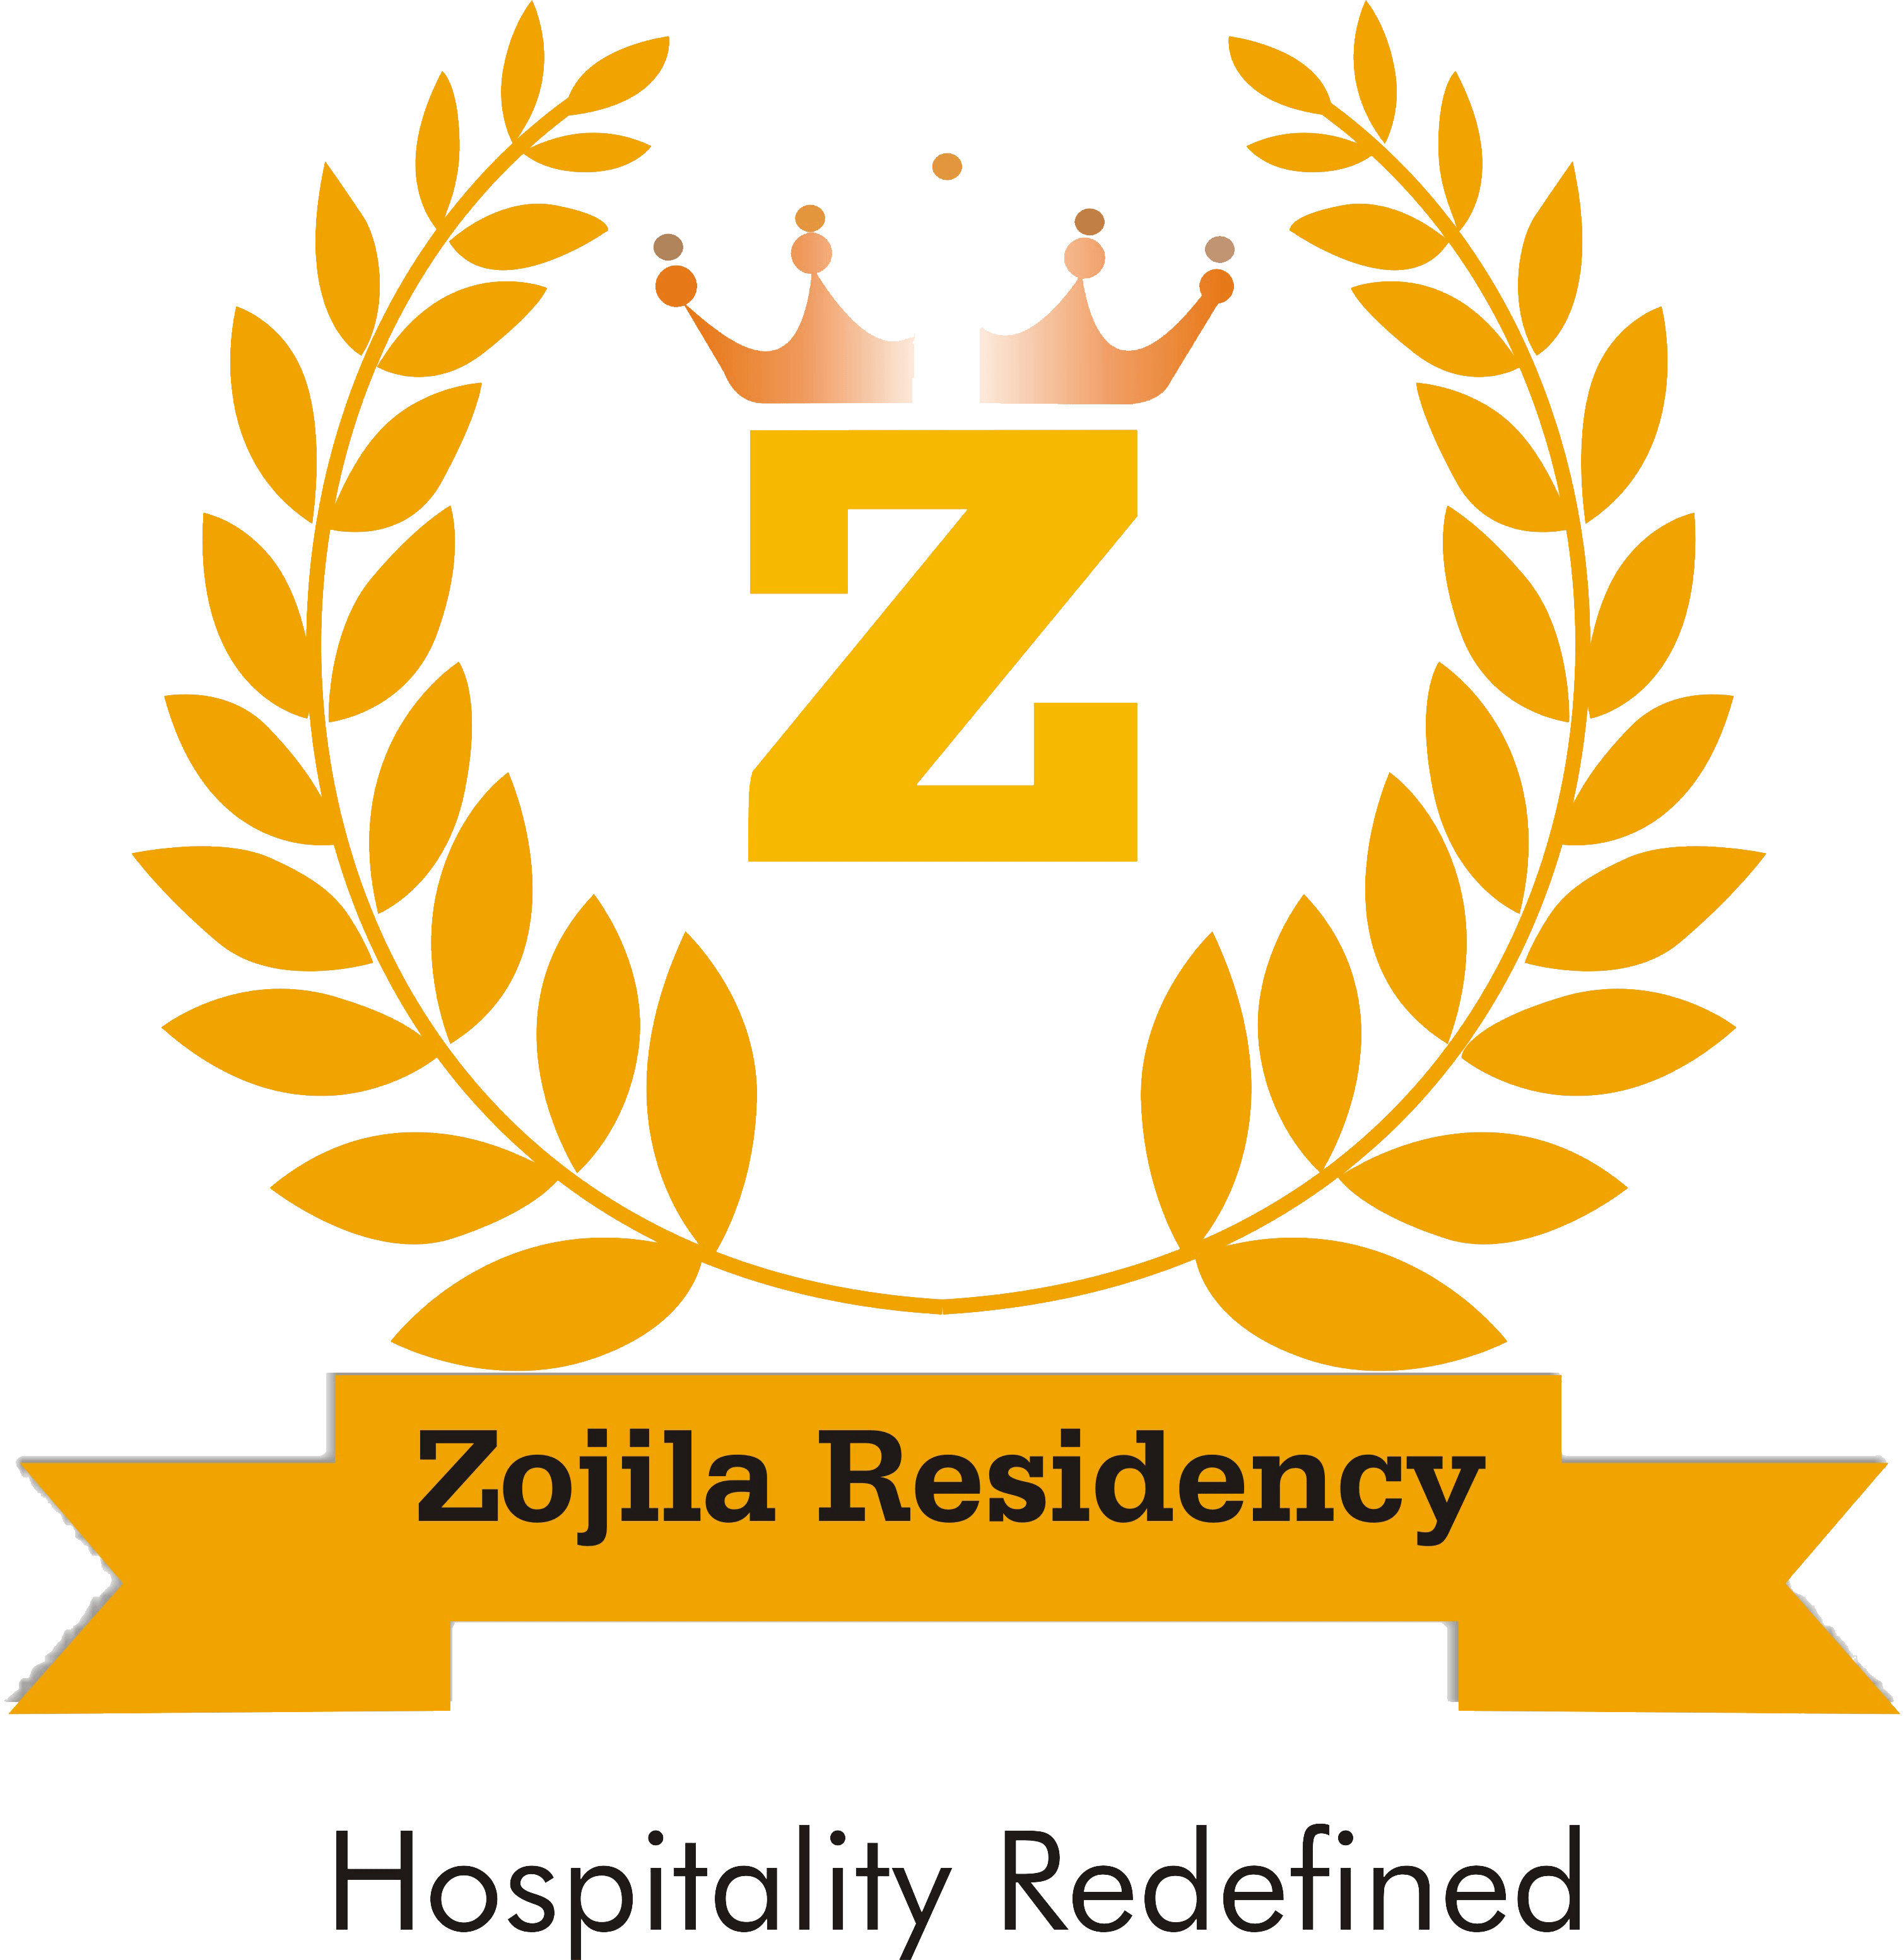 Hotel Zojila Residency|Resort|Accomodation